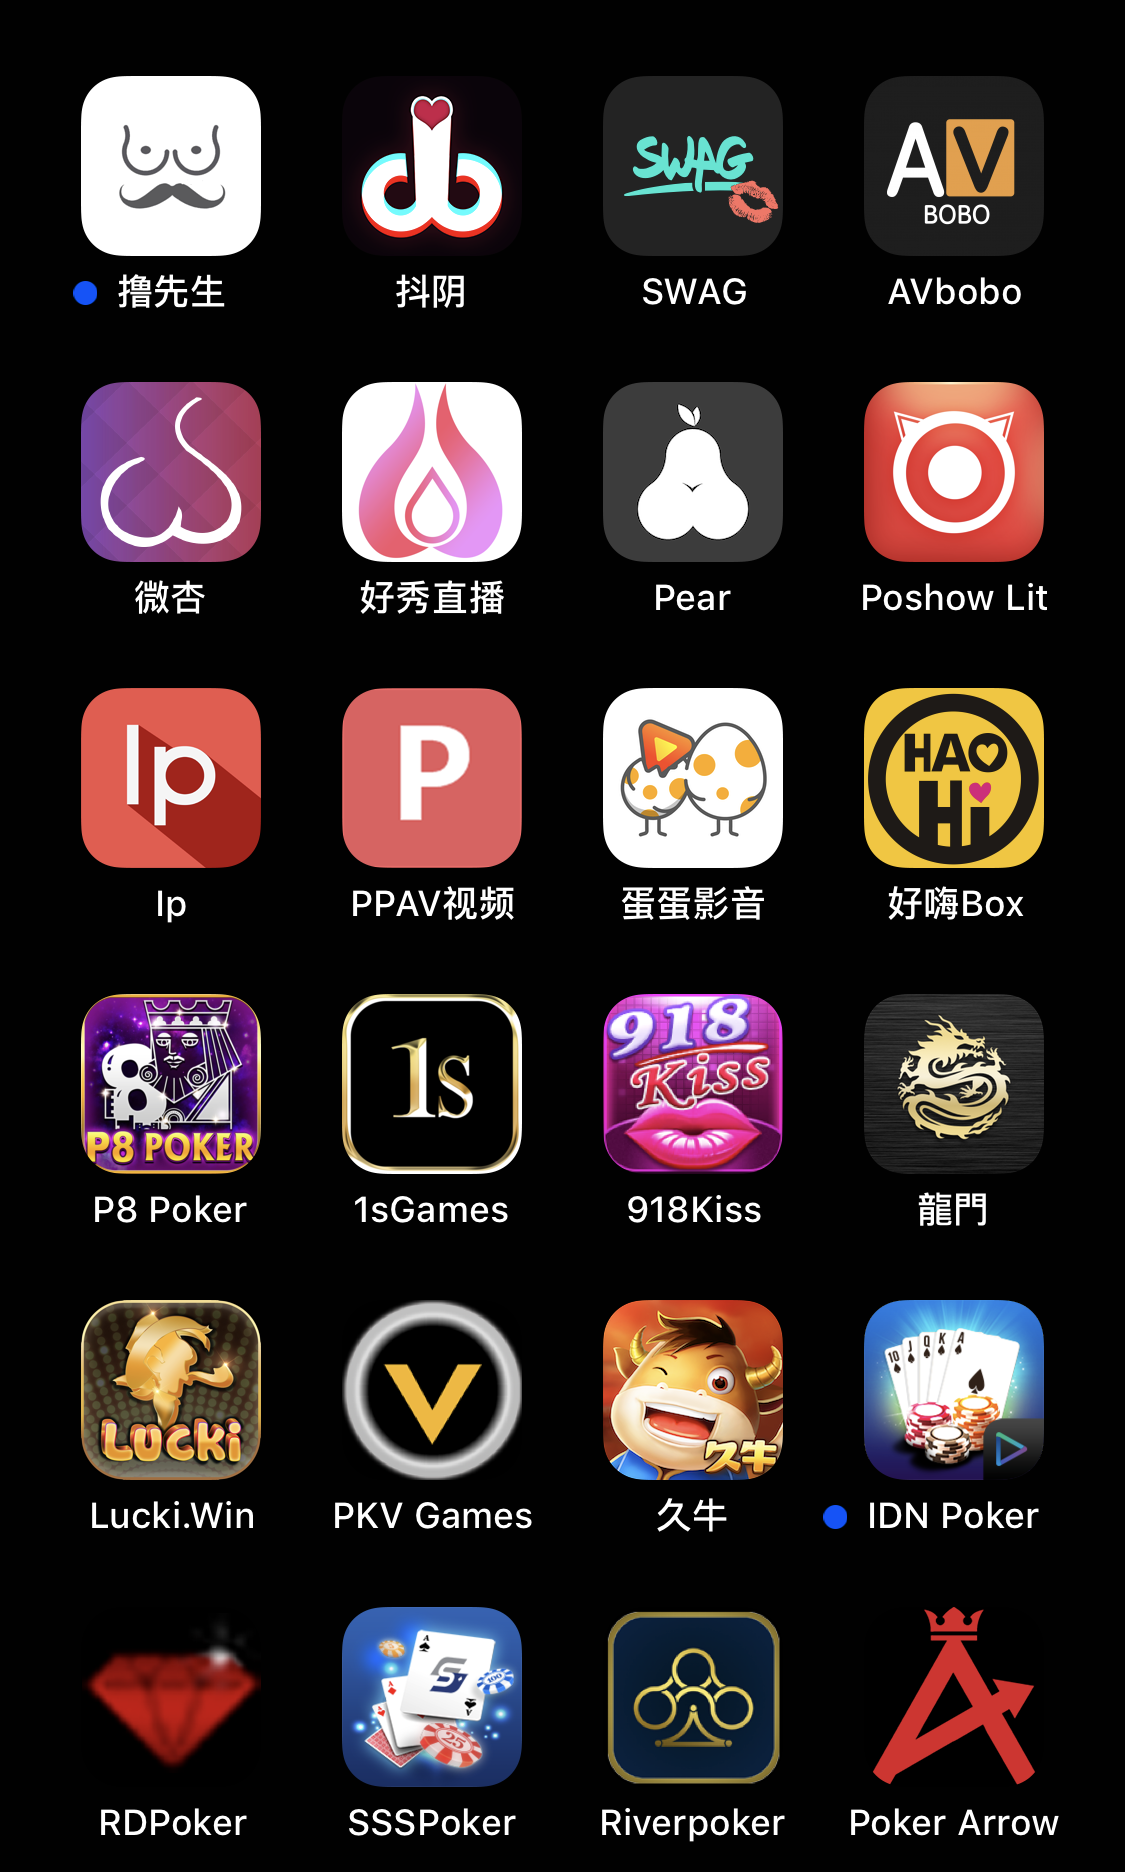 Pornhub App Iphone